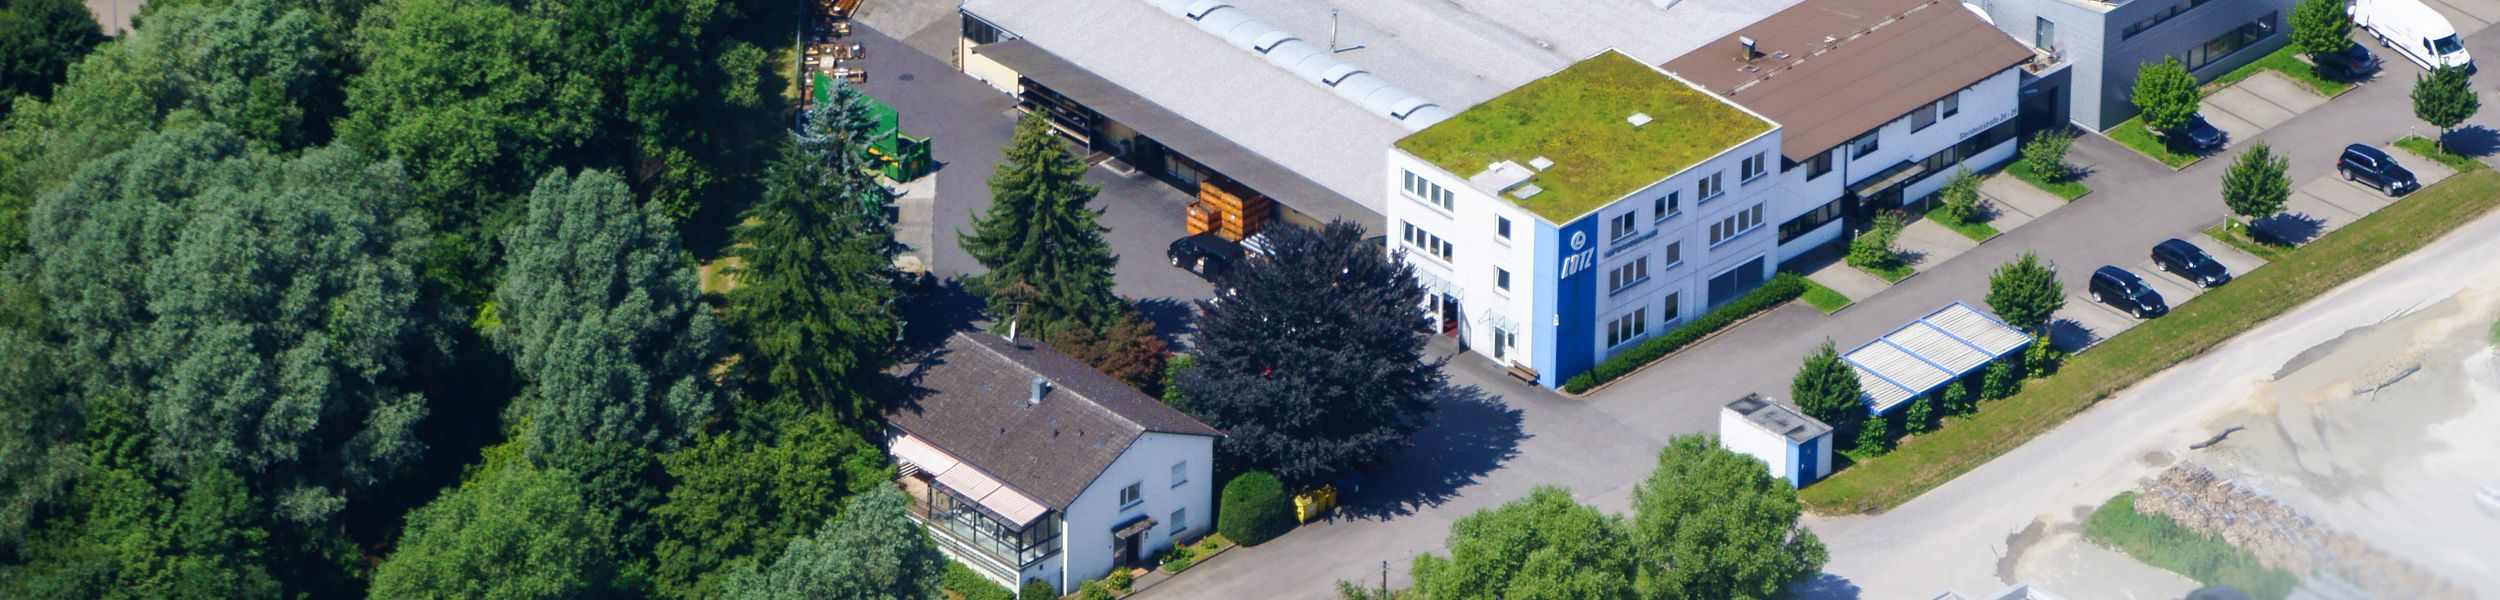 Firmengebäude von Lutz Tiefbohrungen GmbH